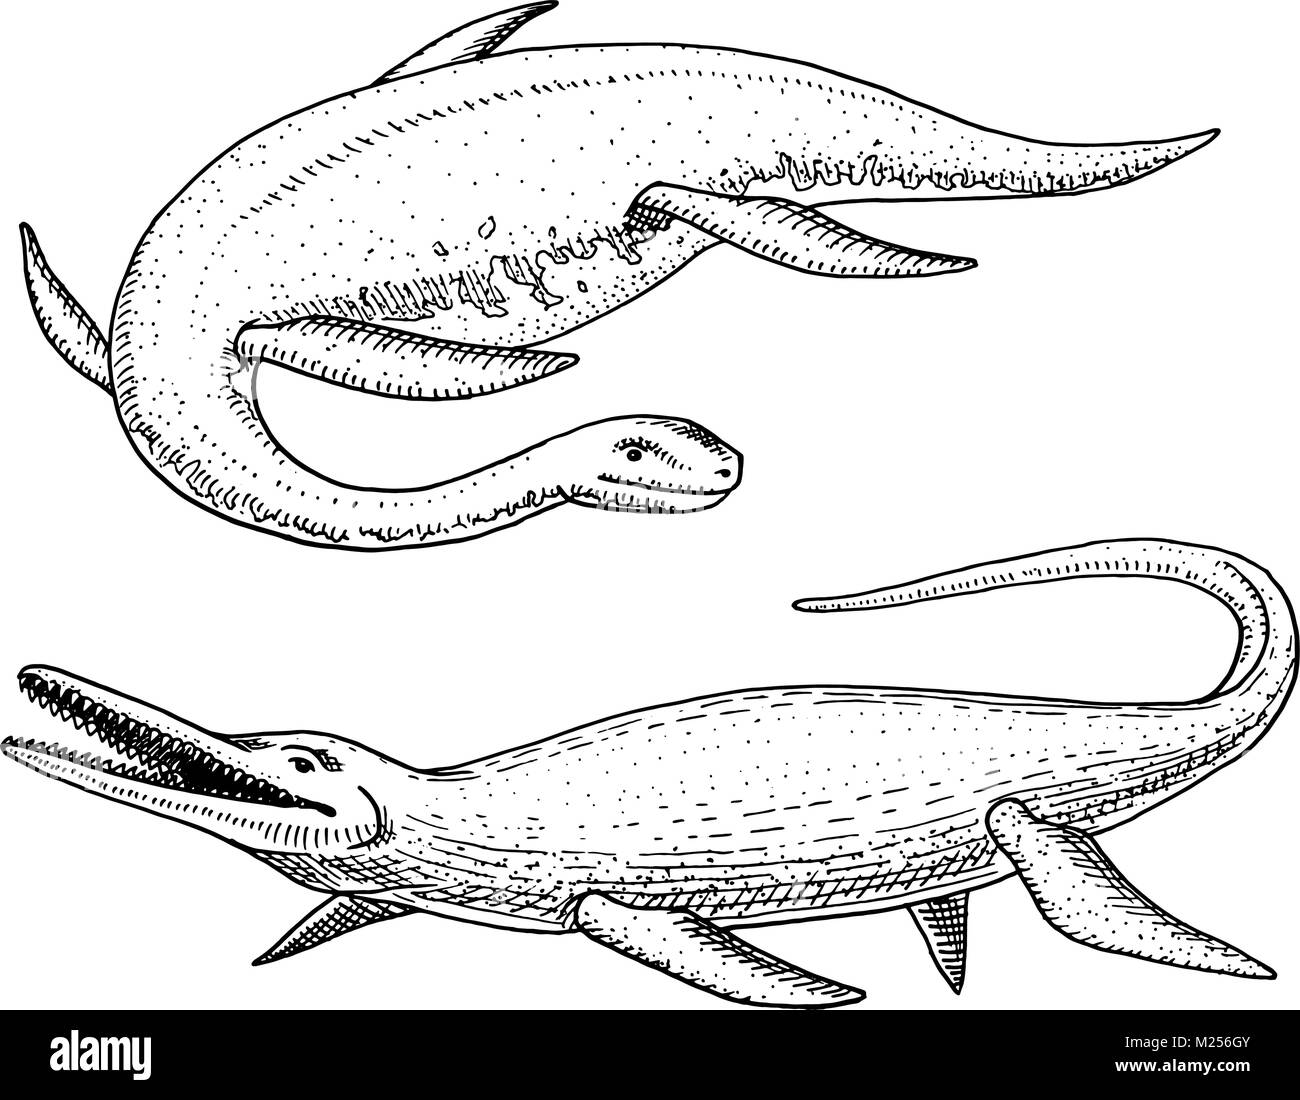 Dinosaurios acuaticos fotografías e imágenes de alta resolución - Alamy